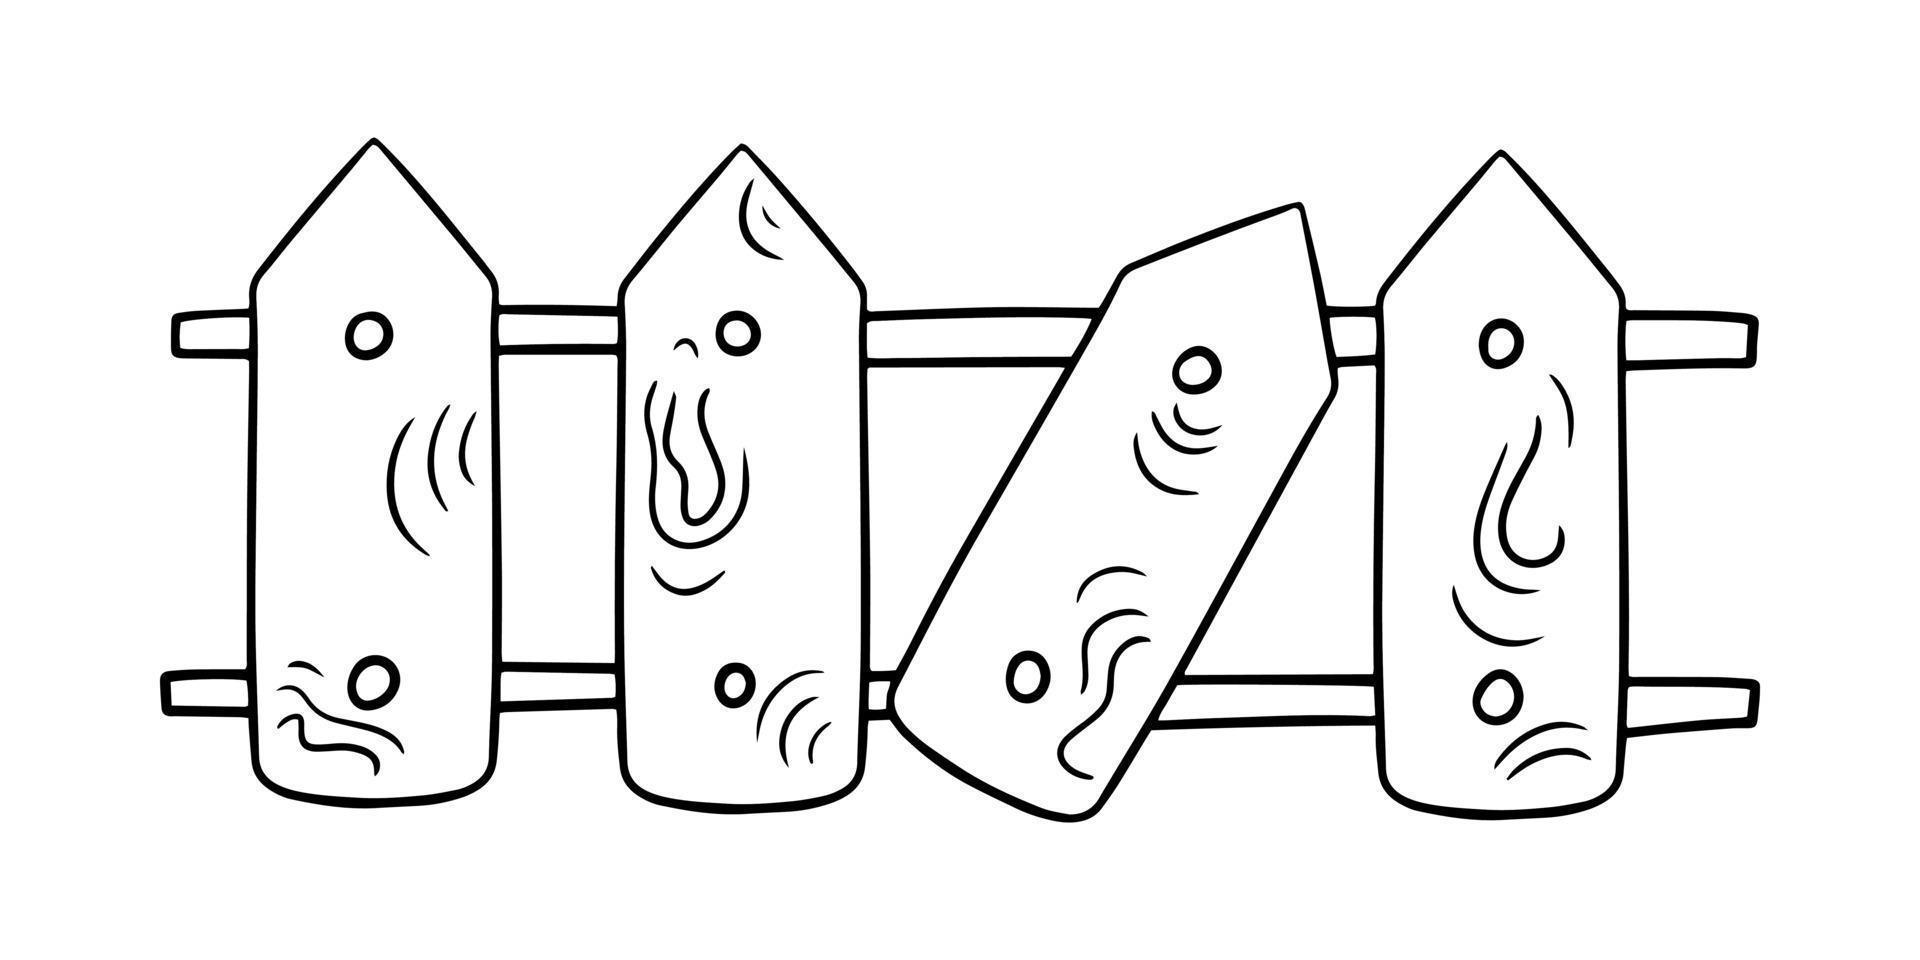 imagem monocromática, cerca de madeira com uma parte quebrada, ilustração vetorial em estilo cartoon em um fundo branco vetor